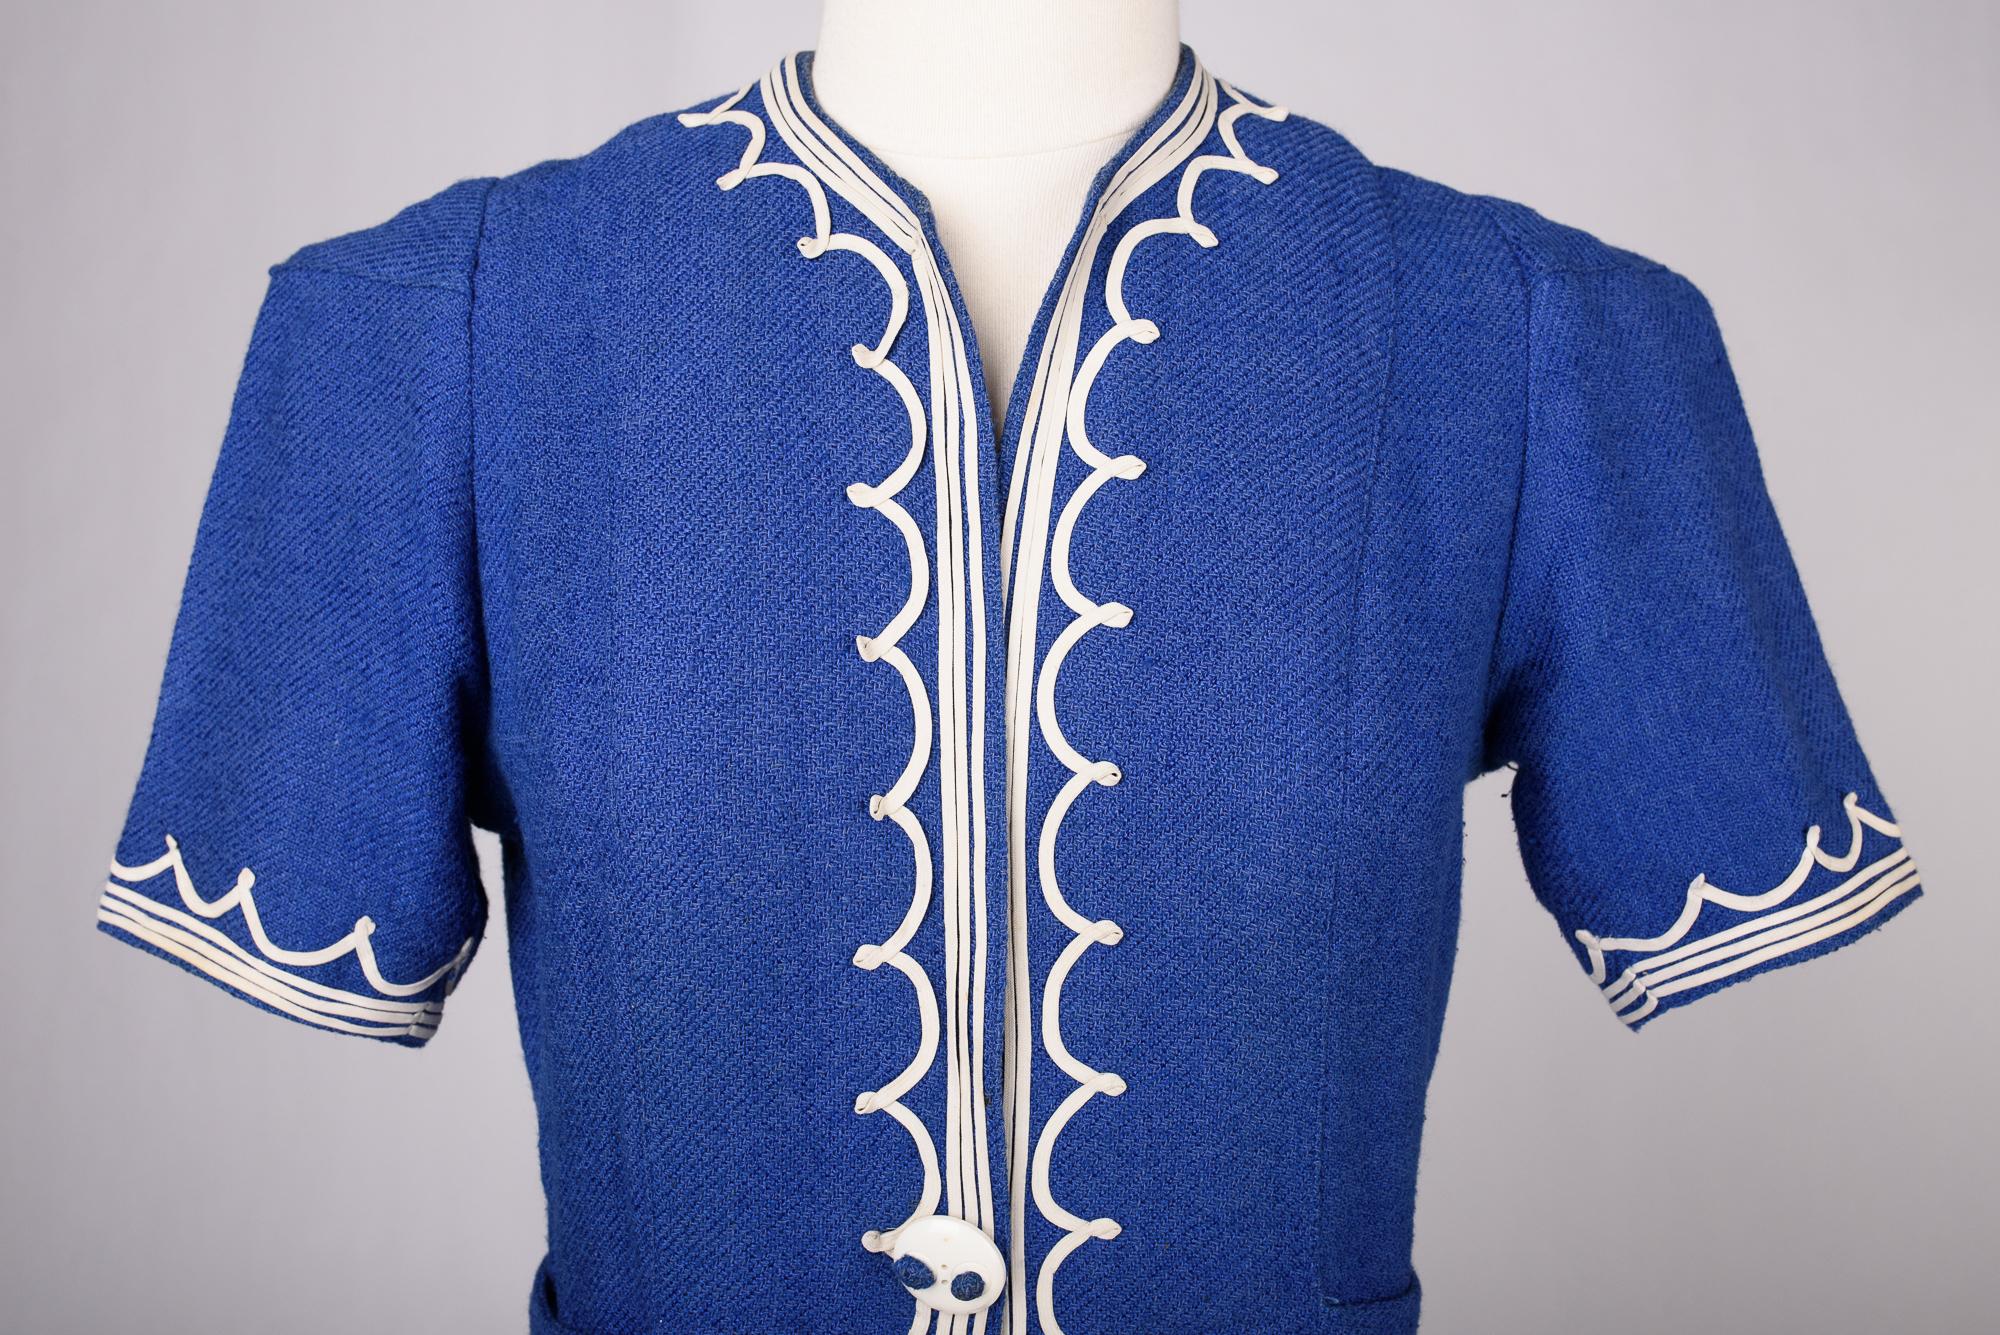 A Rare Blue Navy woollen dress by Henry à la Pensée - France Circa 1945 For Sale 1